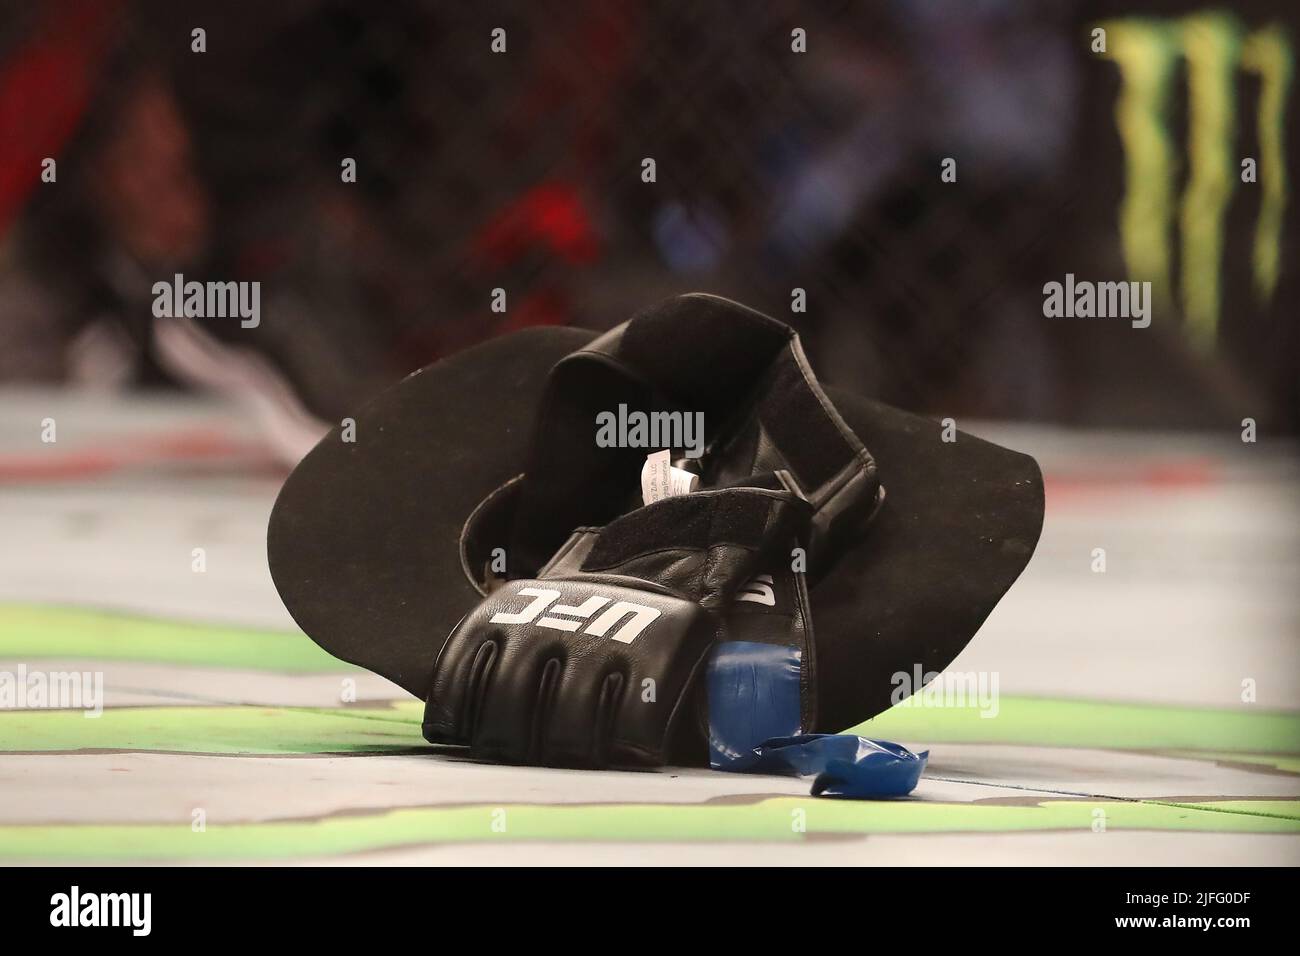 LAS VEGAS, NV - 2 JUILLET : le chapeau et le gant de Donald Cerrone sont vus après qu'il a annoncé la retraite de MMA pendant l'UFC 276 à l'aréna T-Mobile sur 2 juillet 2022 à Las Vegas, Nevada, États-Unis. (Photo par Alejandro Salazar/PxImages) Banque D'Images